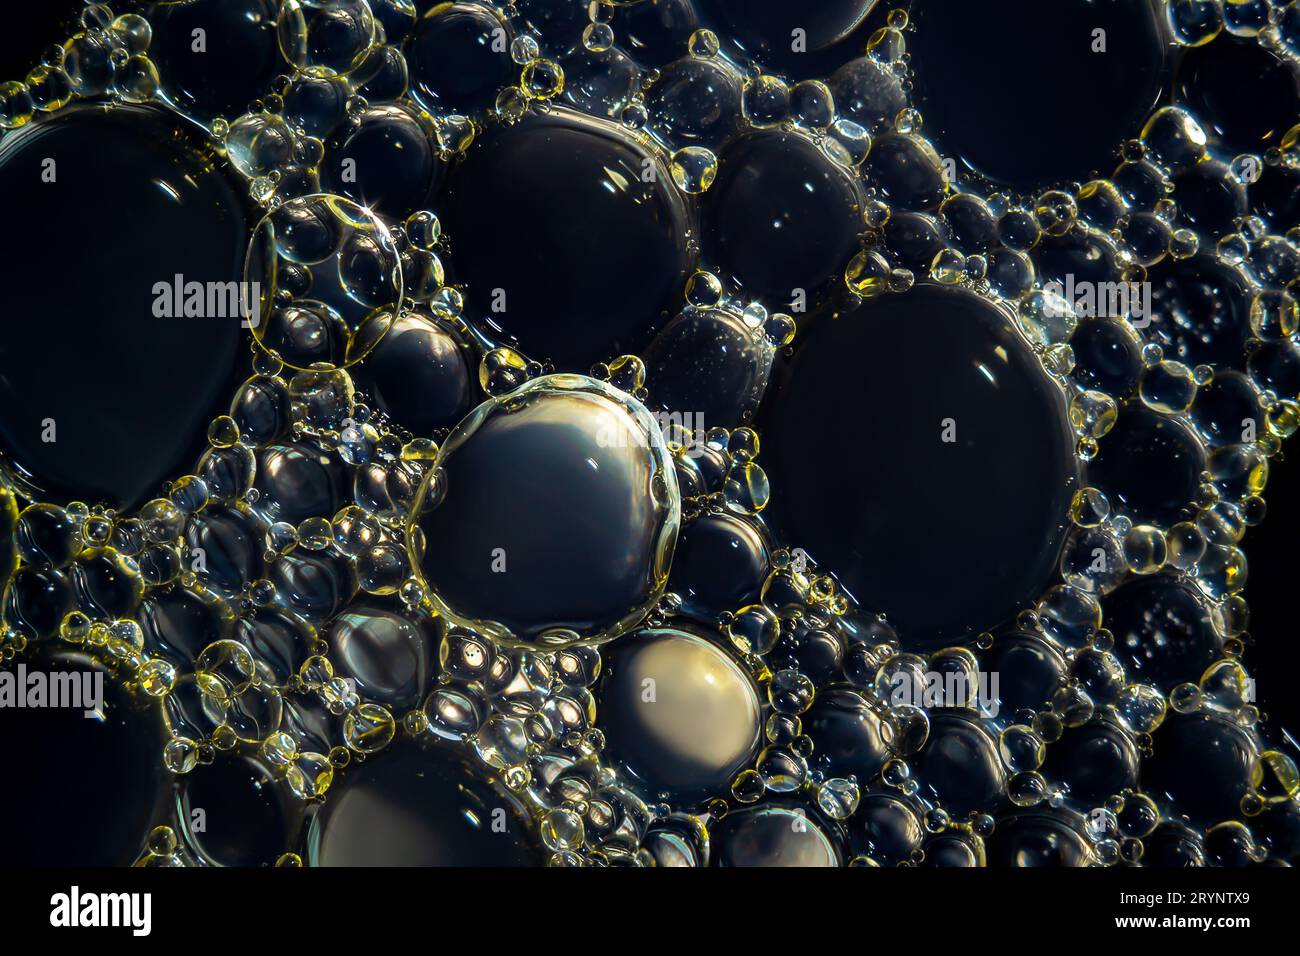 Macrophoto de gouttelettes d'huile et de bulles sur une surface d'eau Banque D'Images